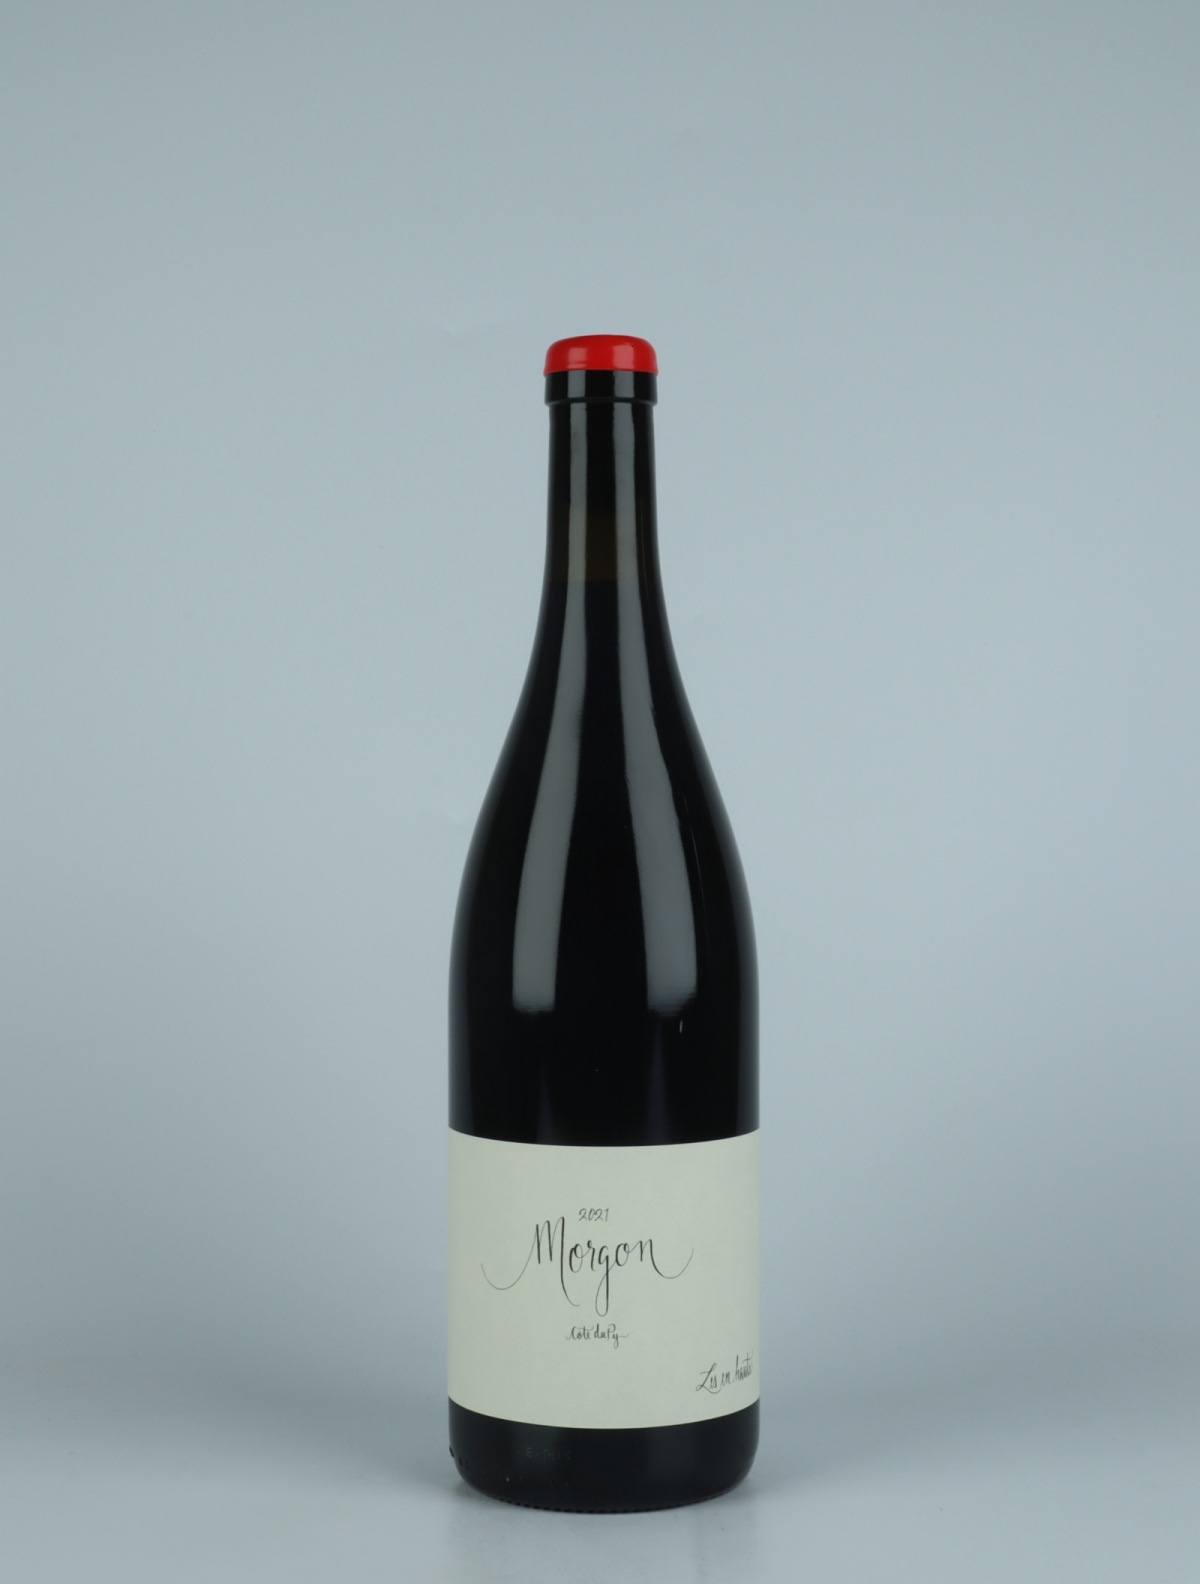 A bottle 2021 Morgon - Côte de Py Red wine from Les En Hauts, Beaujolais in France